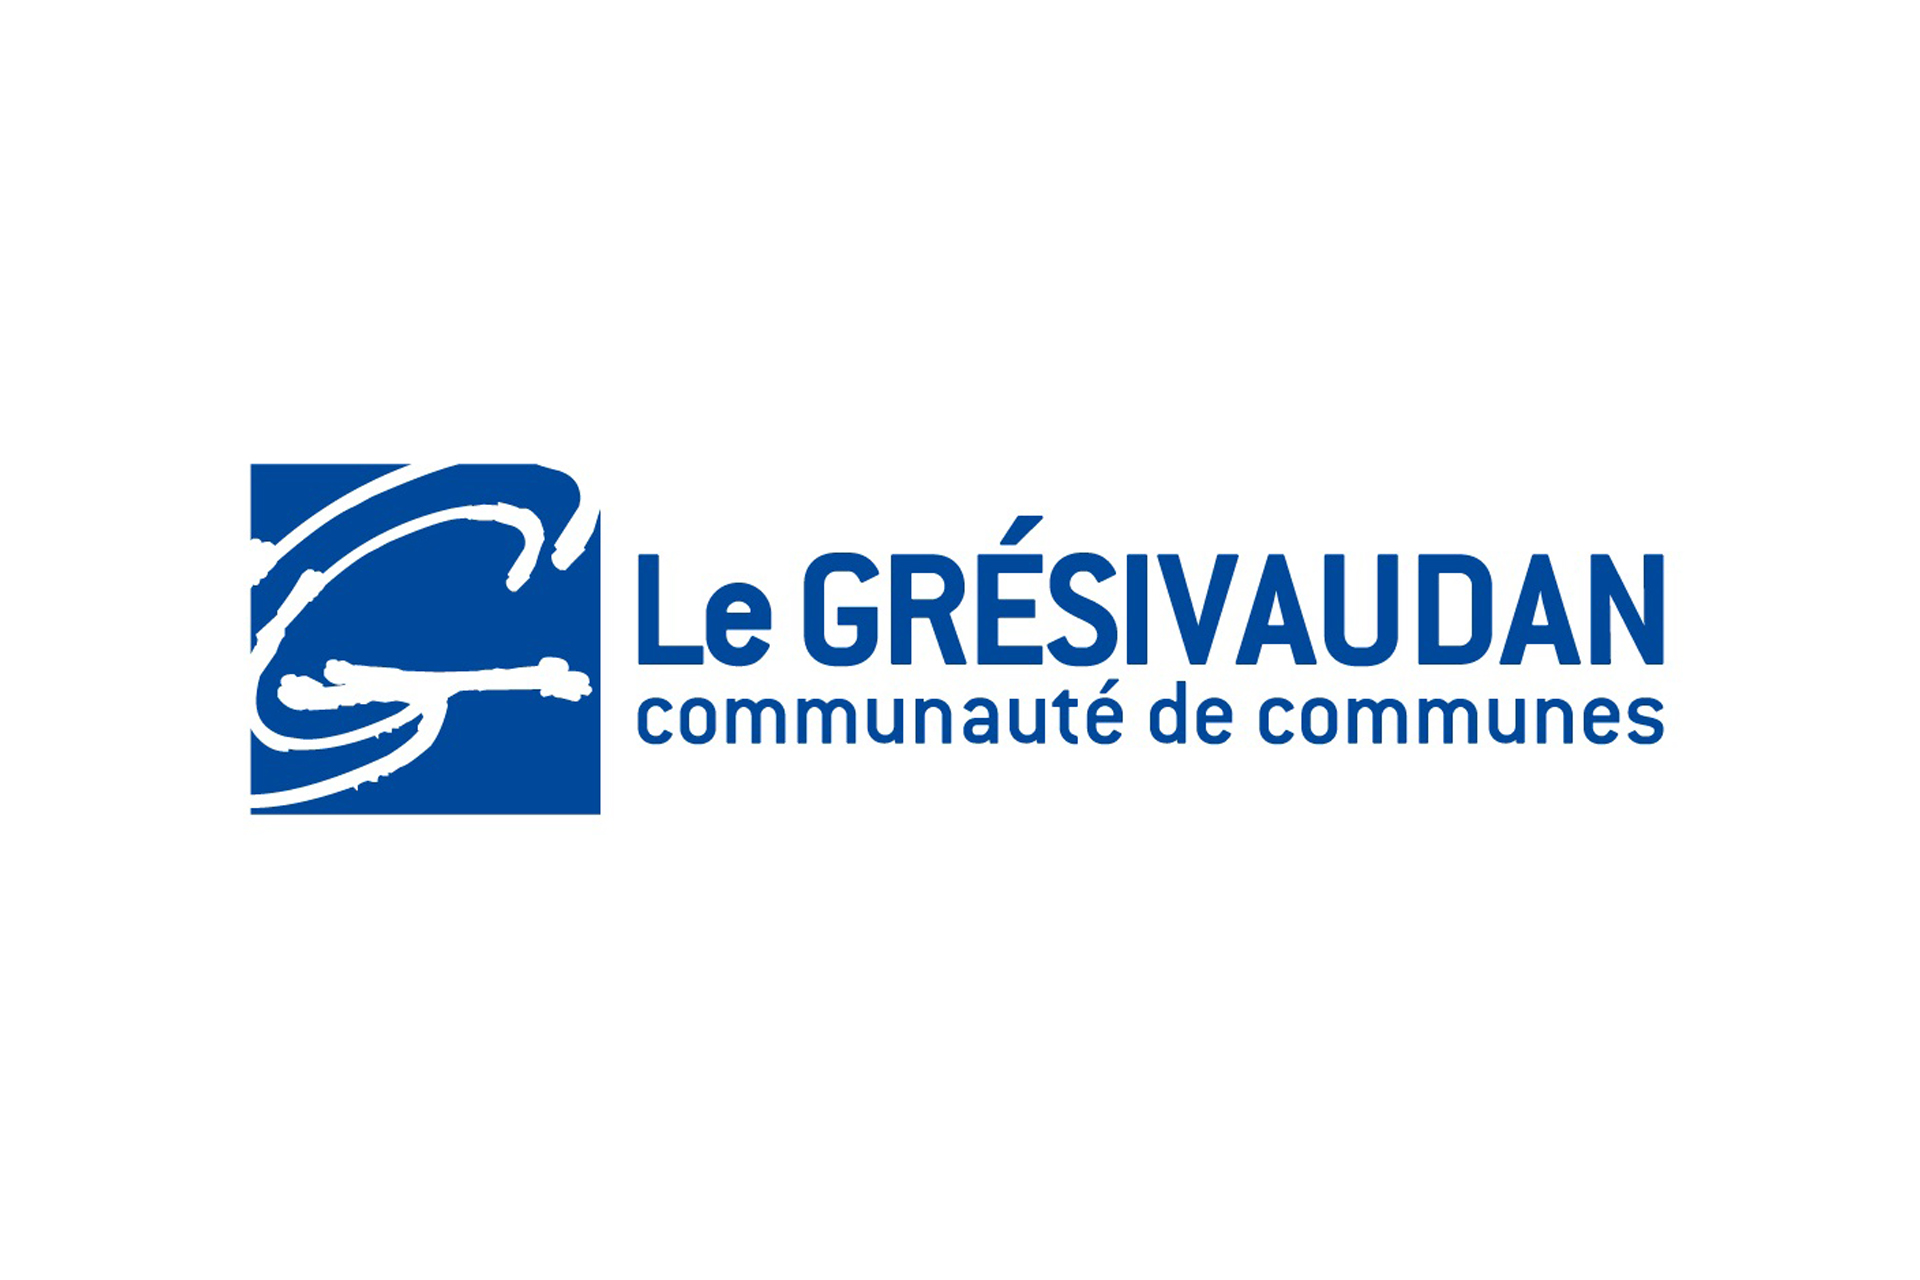 Chamrousse logo partenaire institution communauté commune grésivaudan station ski grenoble isère alpes france - © Communauté des communes du Grésivaudan